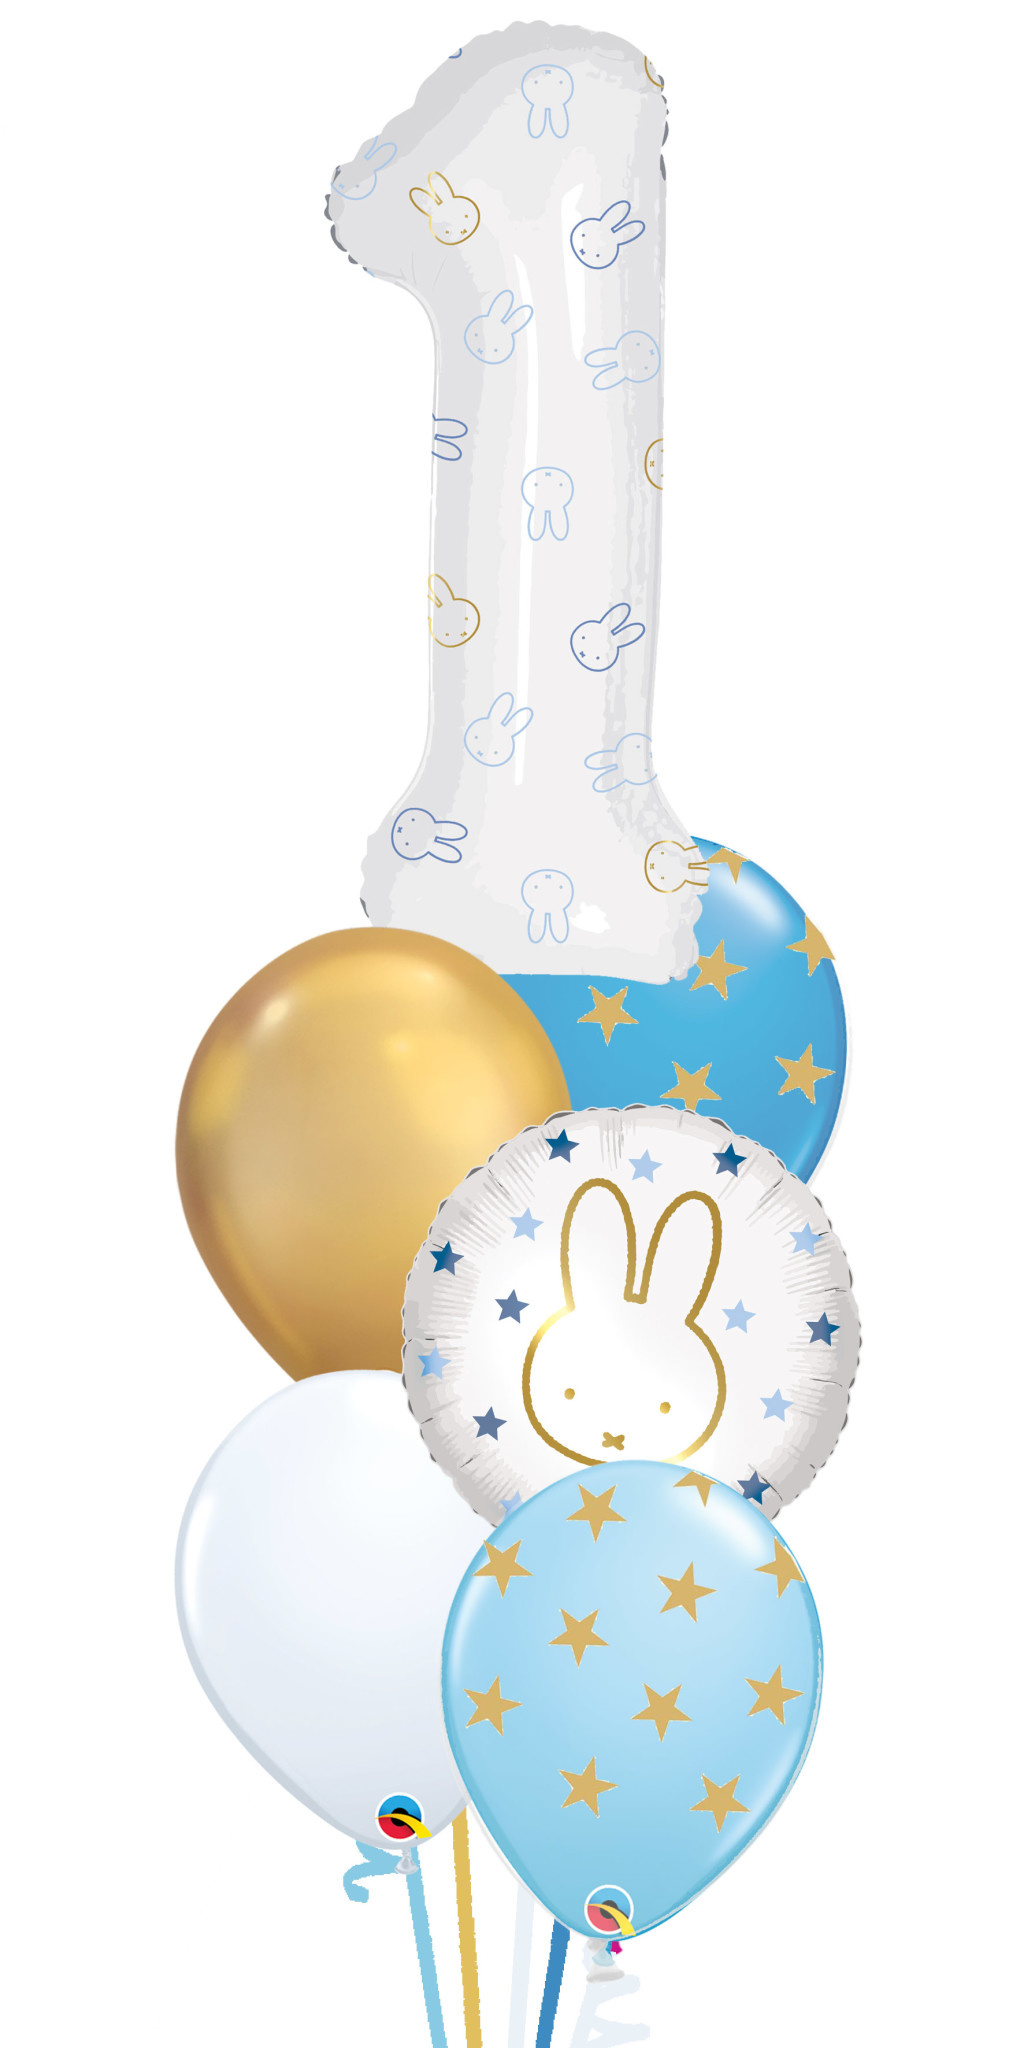 Christus Gemarkeerd compromis Nijntje 1 Jaar Blue & Gold Set - First Birthday Ballondecoratie - Zorg voor  Party online feestartikelen en ballondecoraties